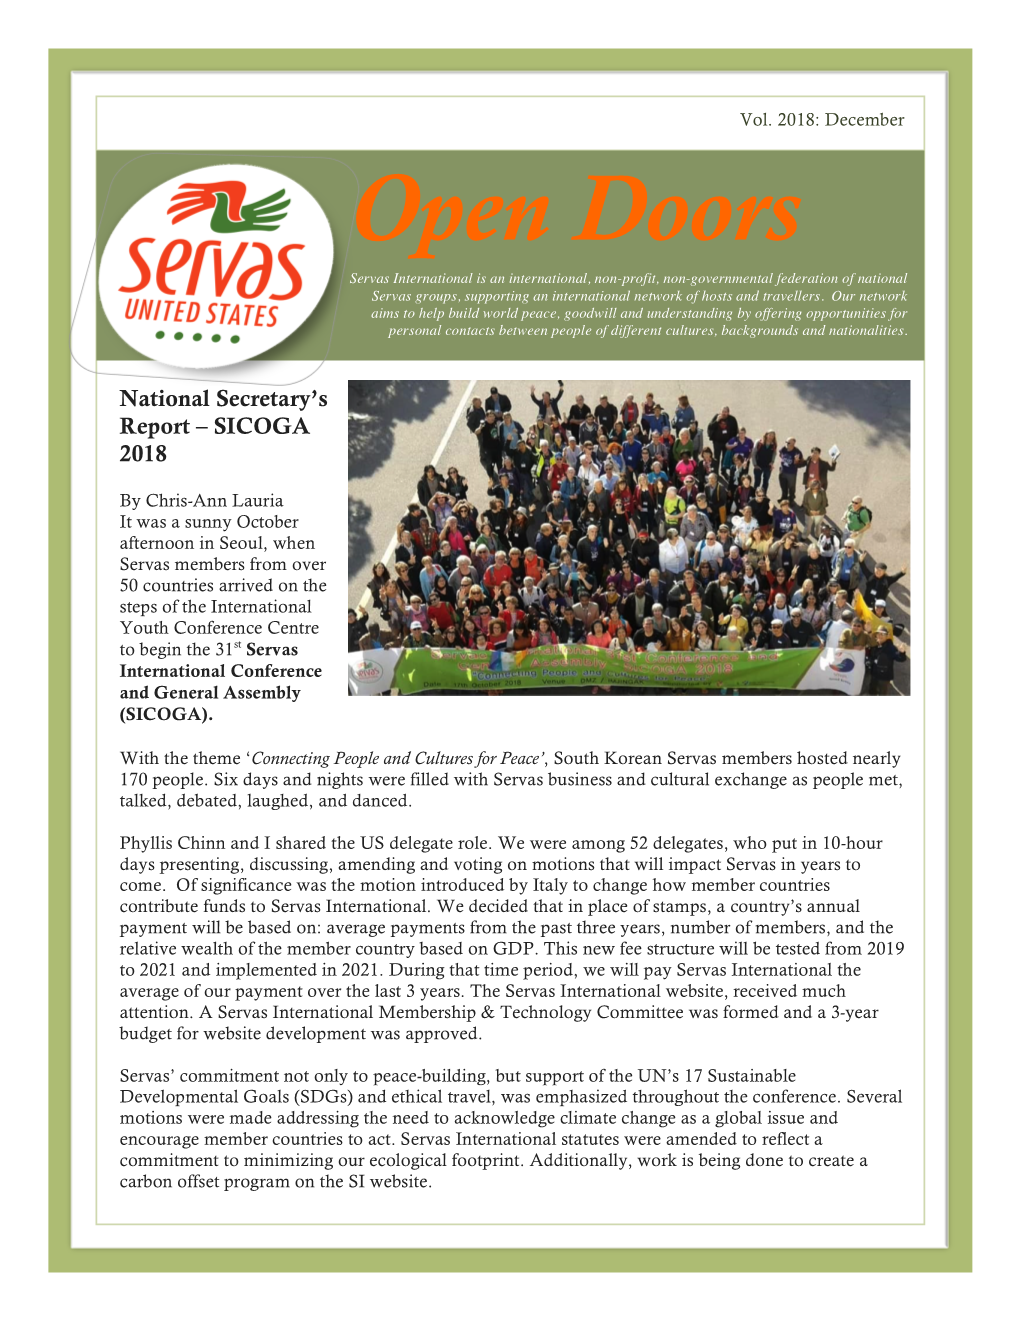 Servas Open Doors Newsletter 2018 Vol. 2